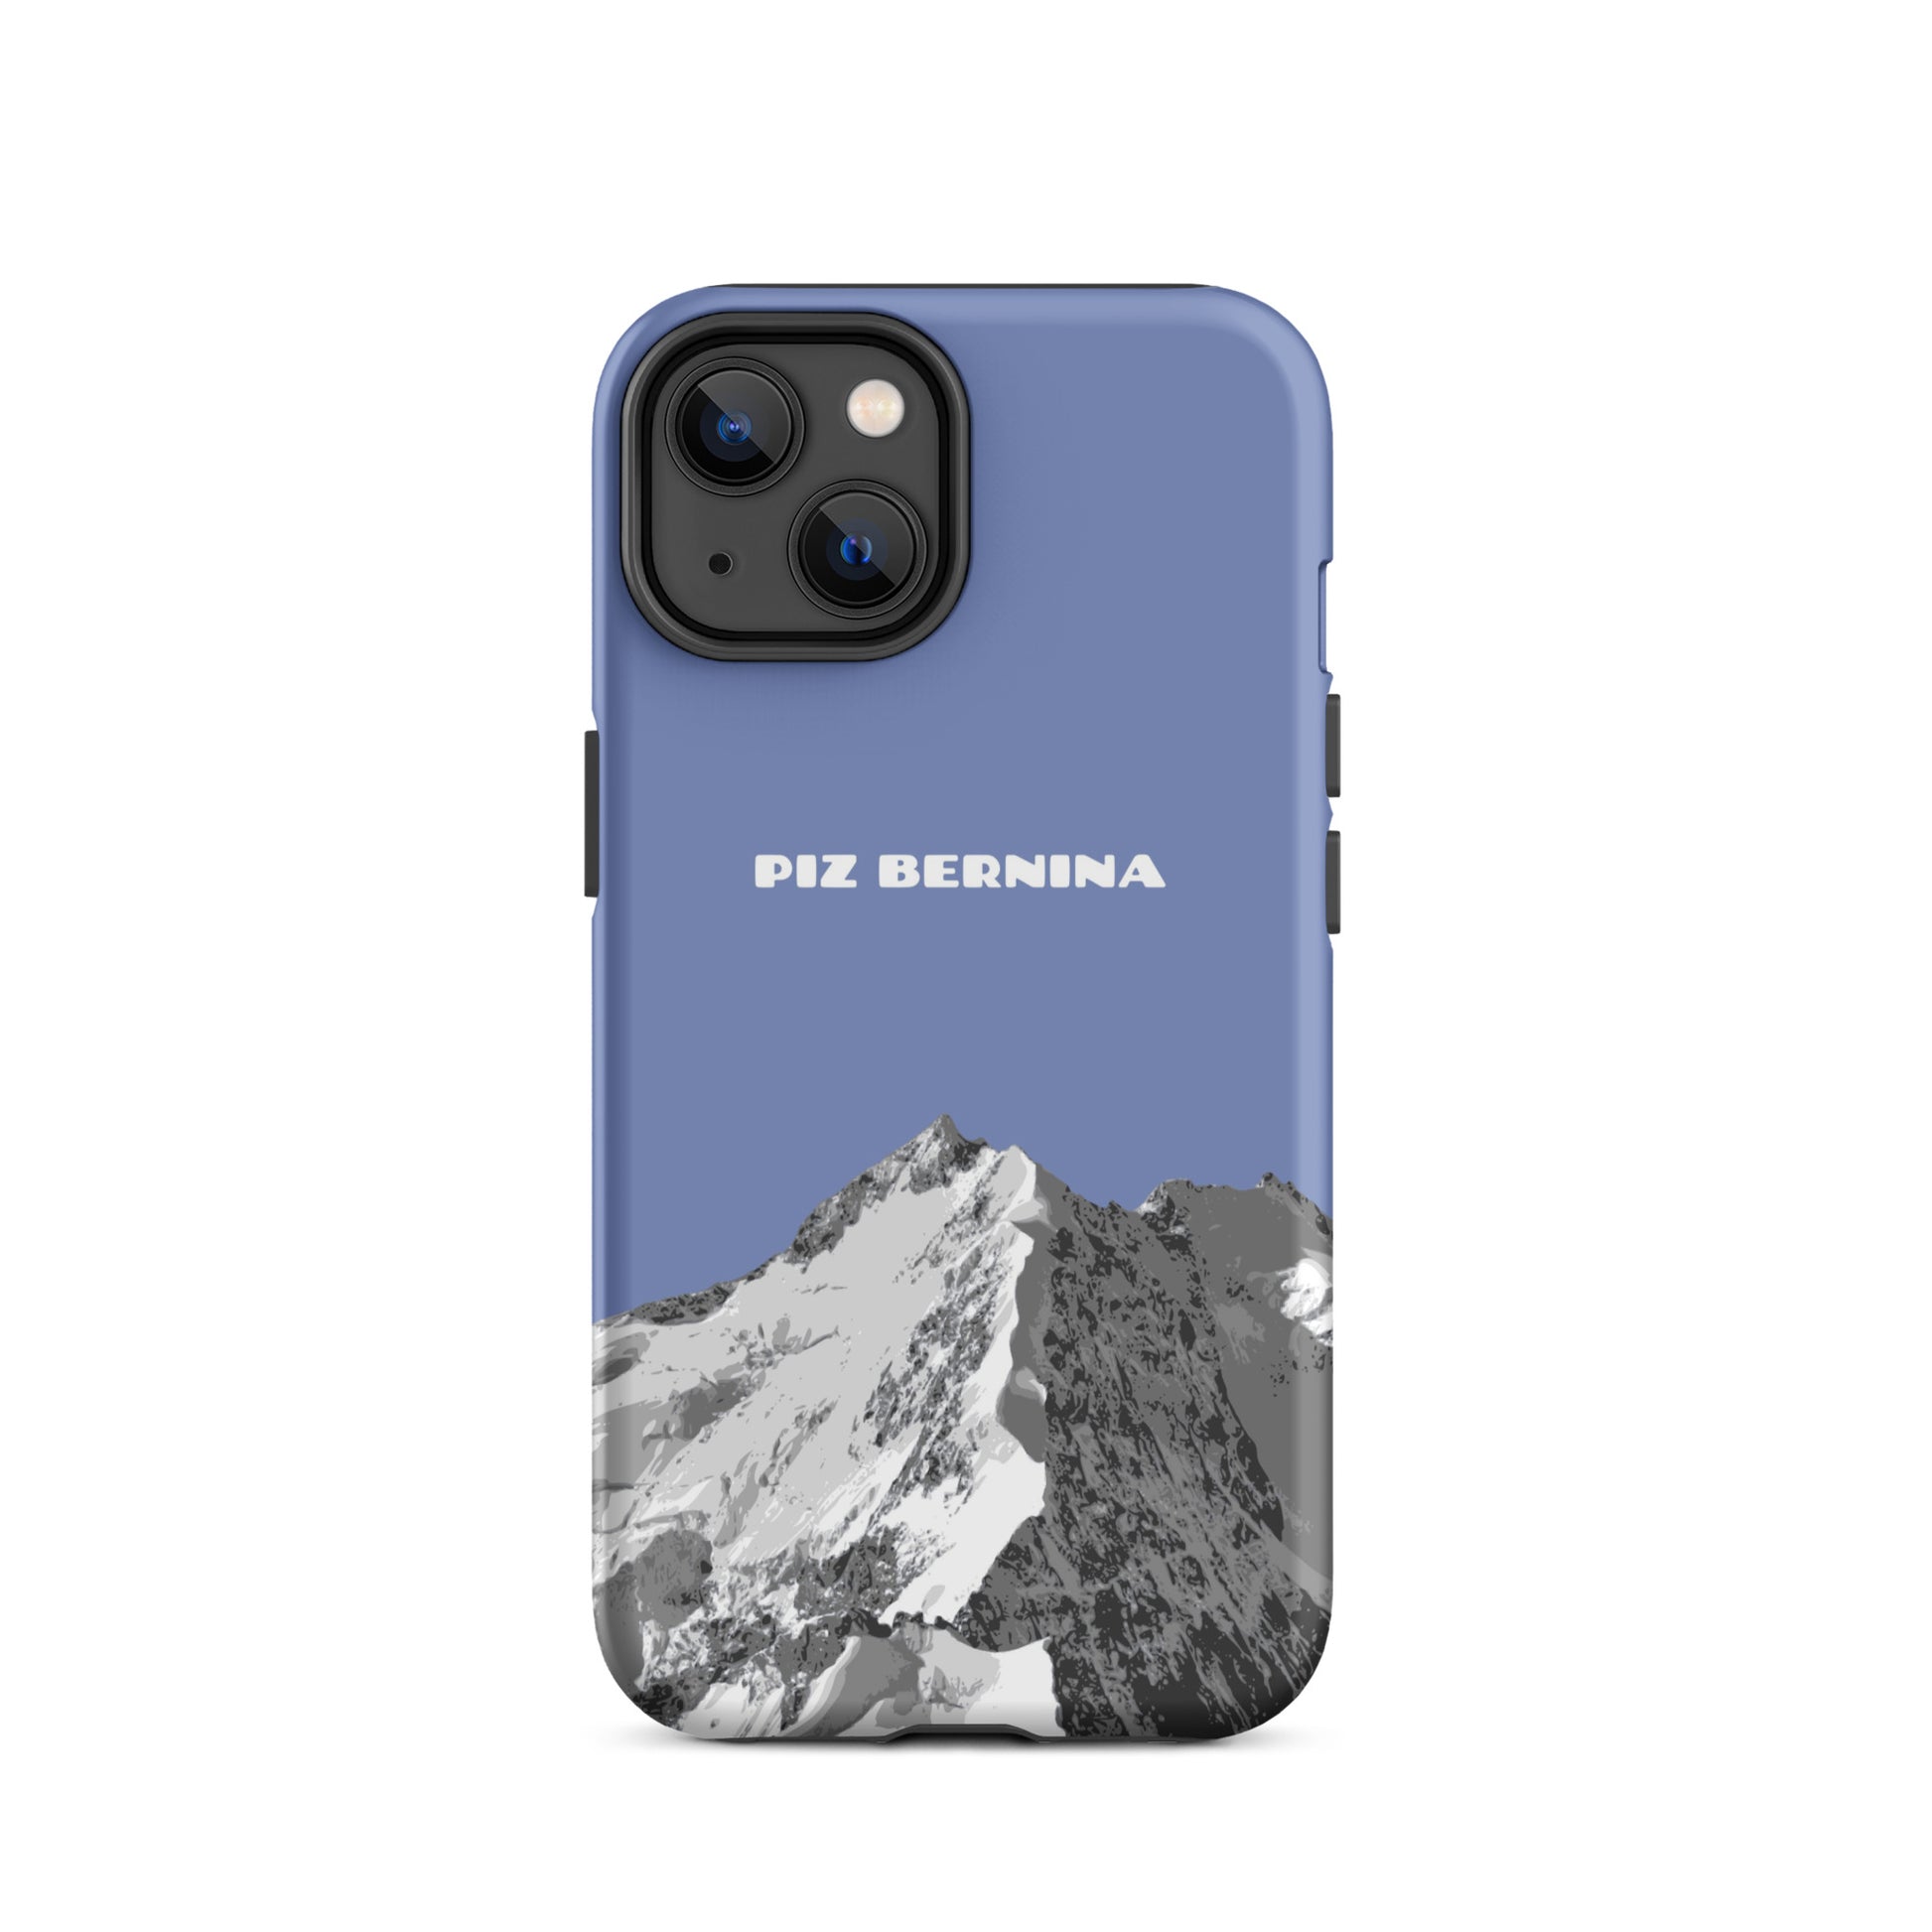 Hülle für das iPhone 14 von Apple in der Farbe Pastellblau, dass den Piz Bernina in Graubünden zeigt.